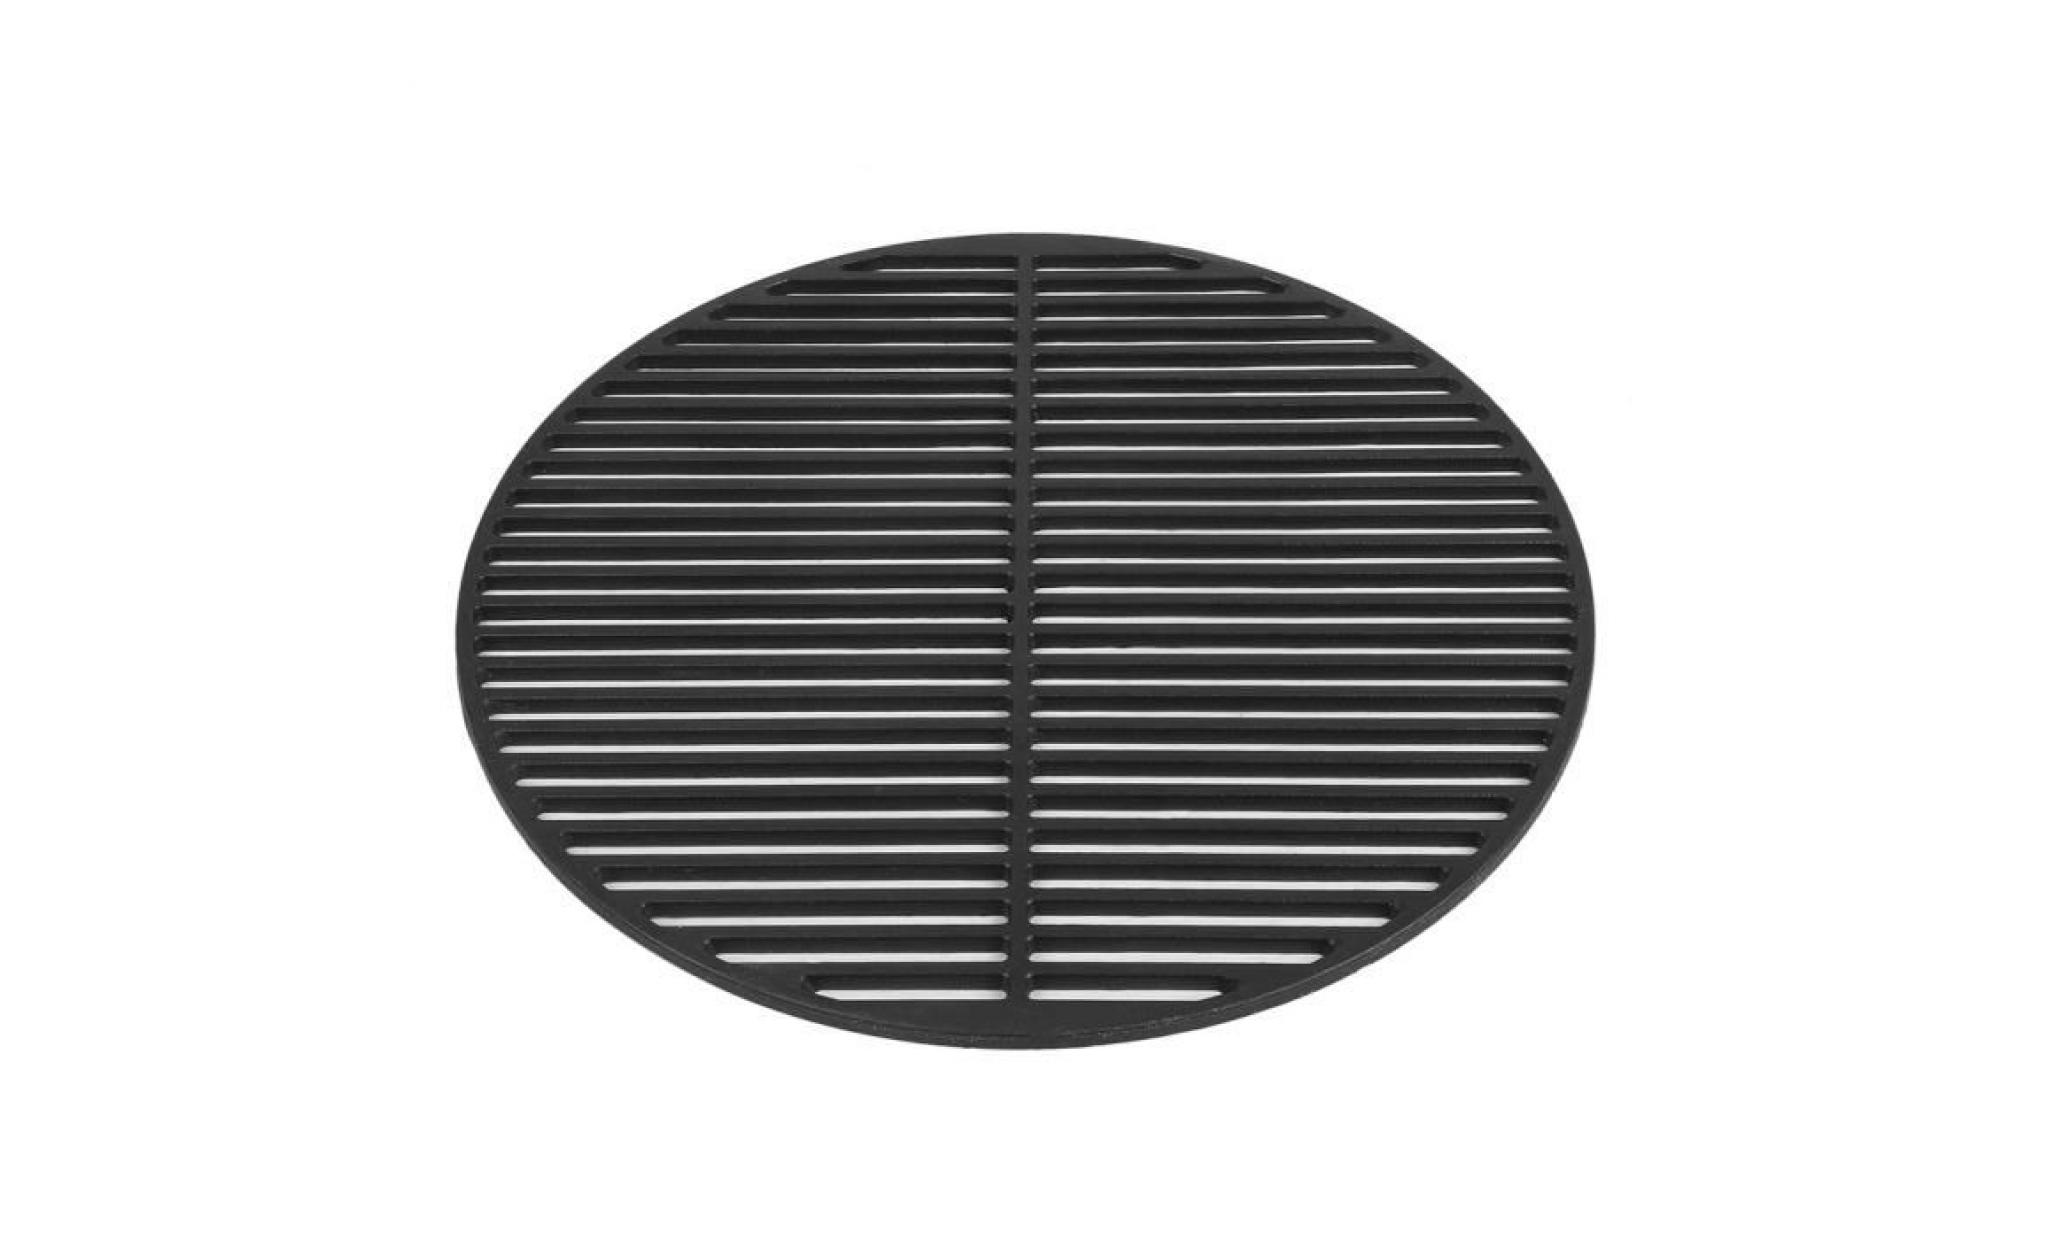 grille en fonte barbecue ronde antiadhésive rôtissoire cuisson accessoires noir diamètre 54.5cm pas cher